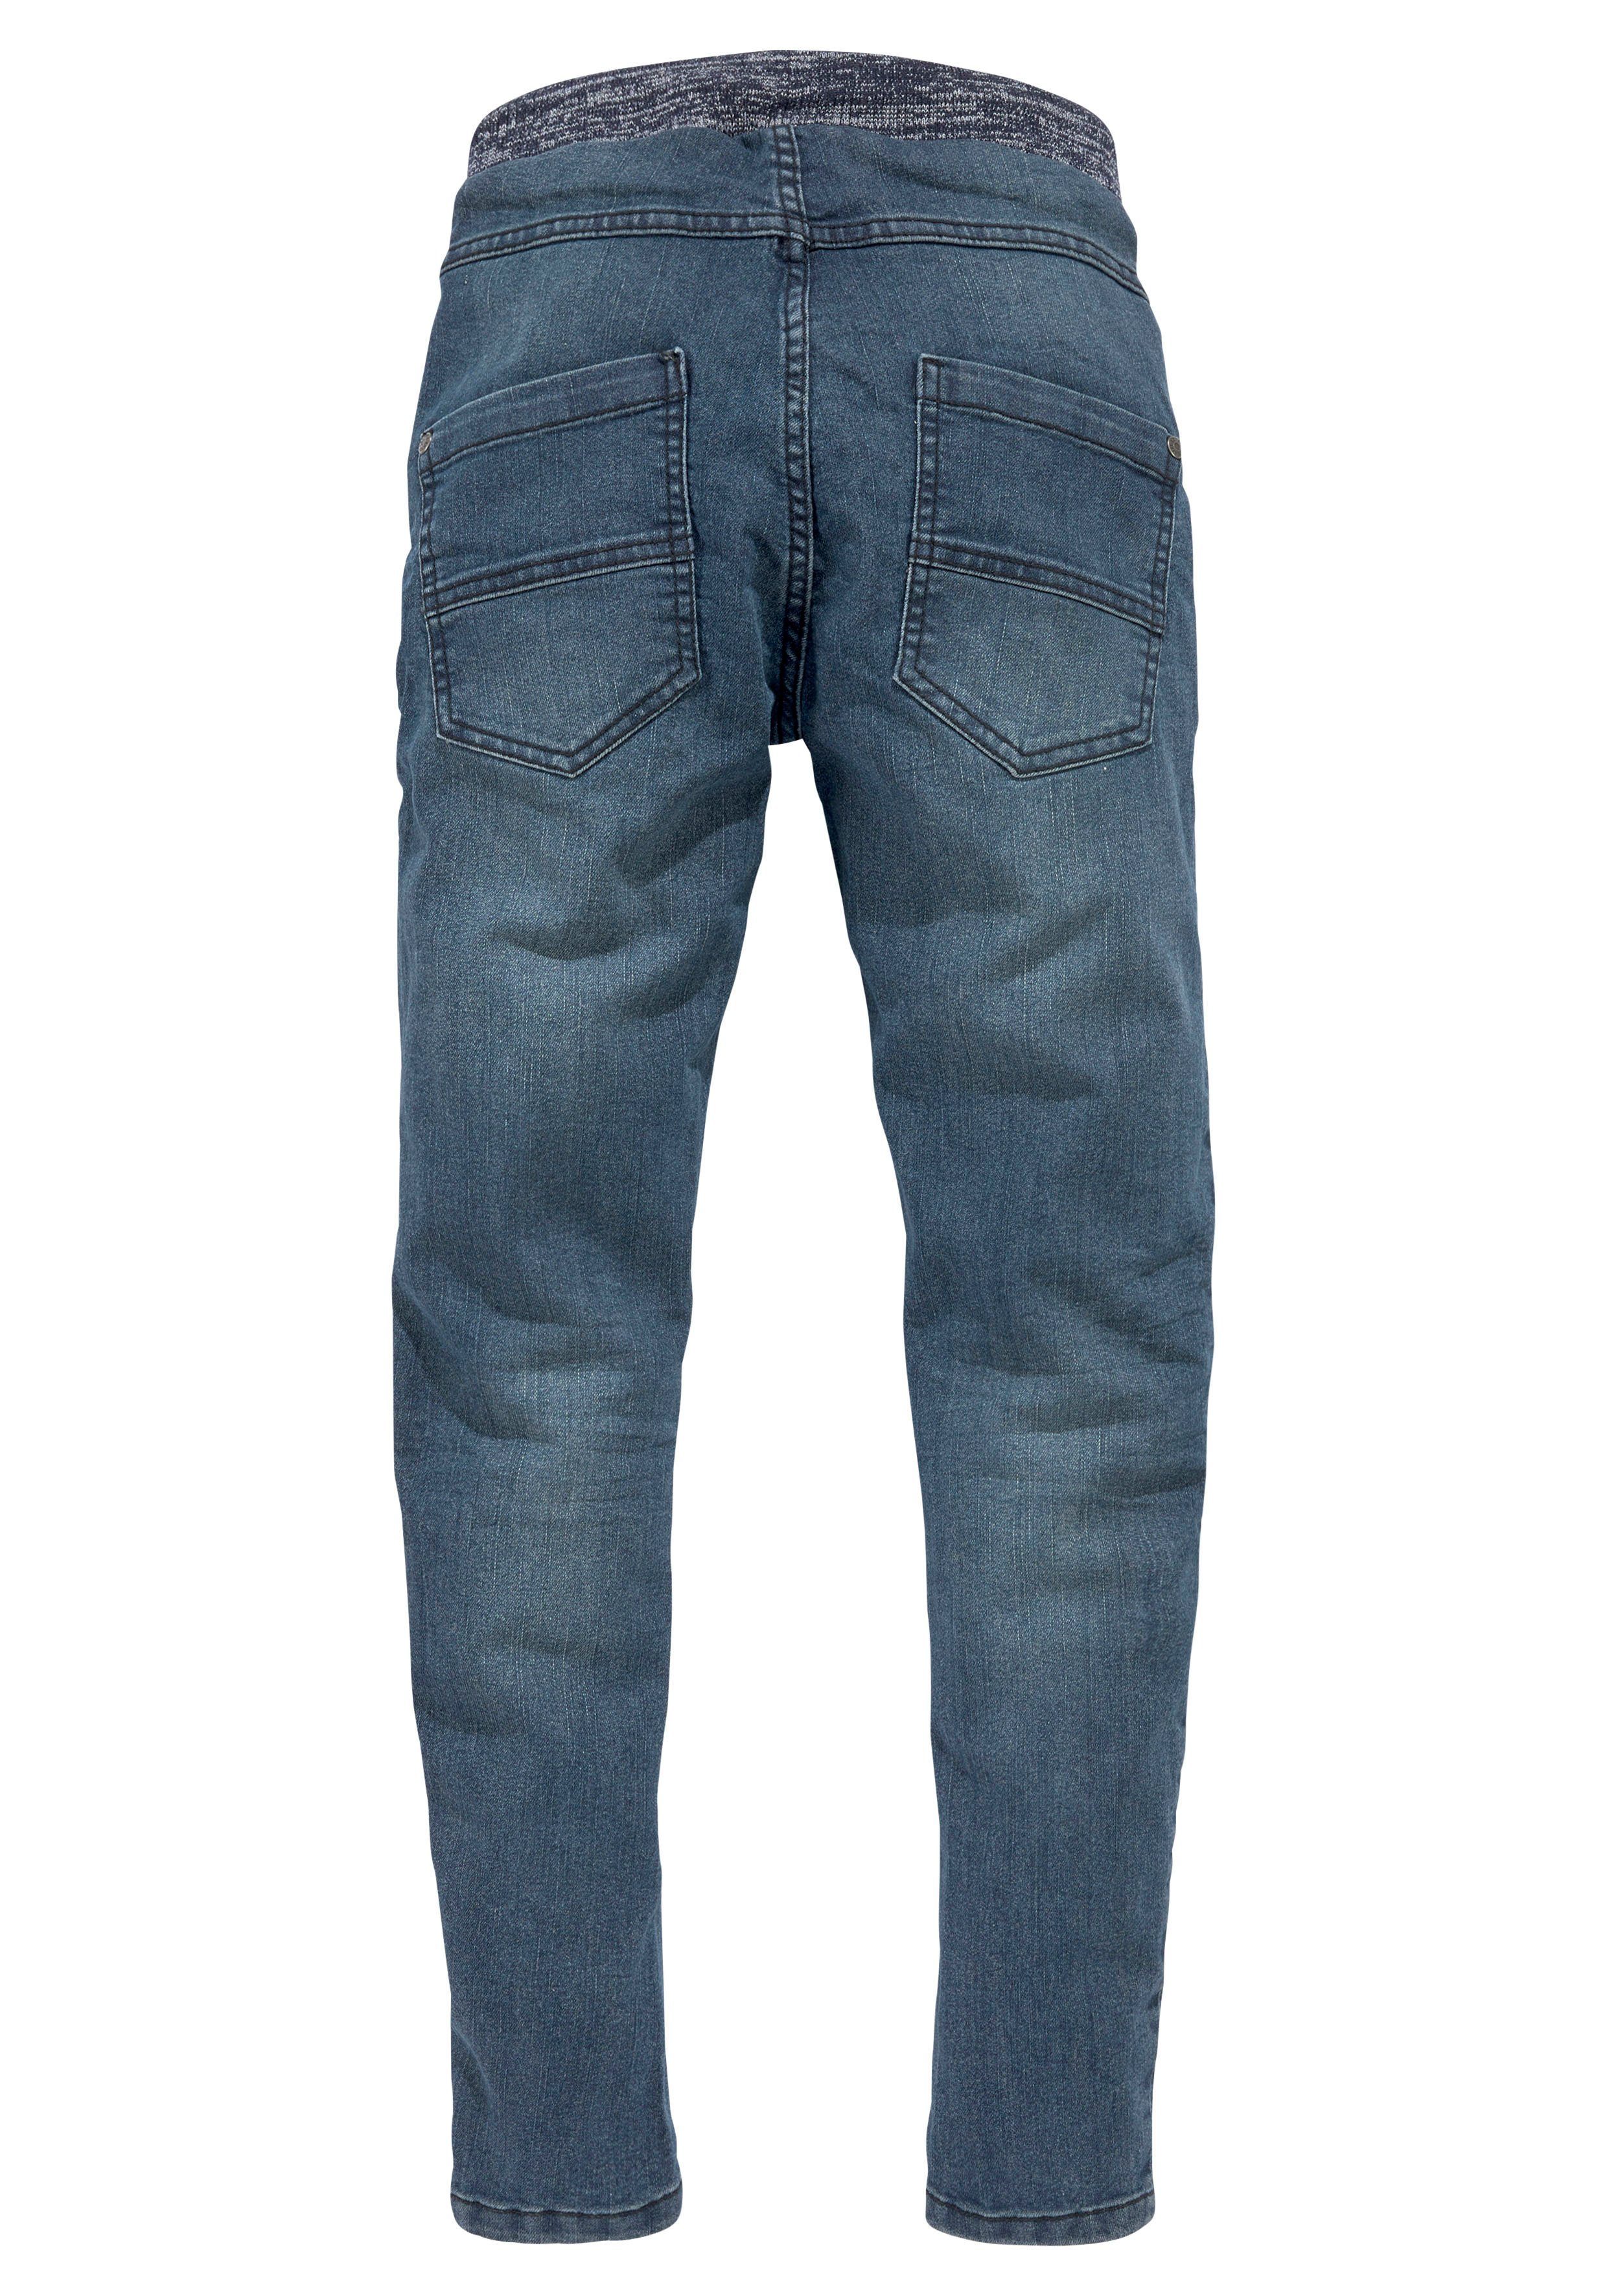 Arizona Stretch-Jeans mit schmalem Beinverlauf Rippenbund tollem mit